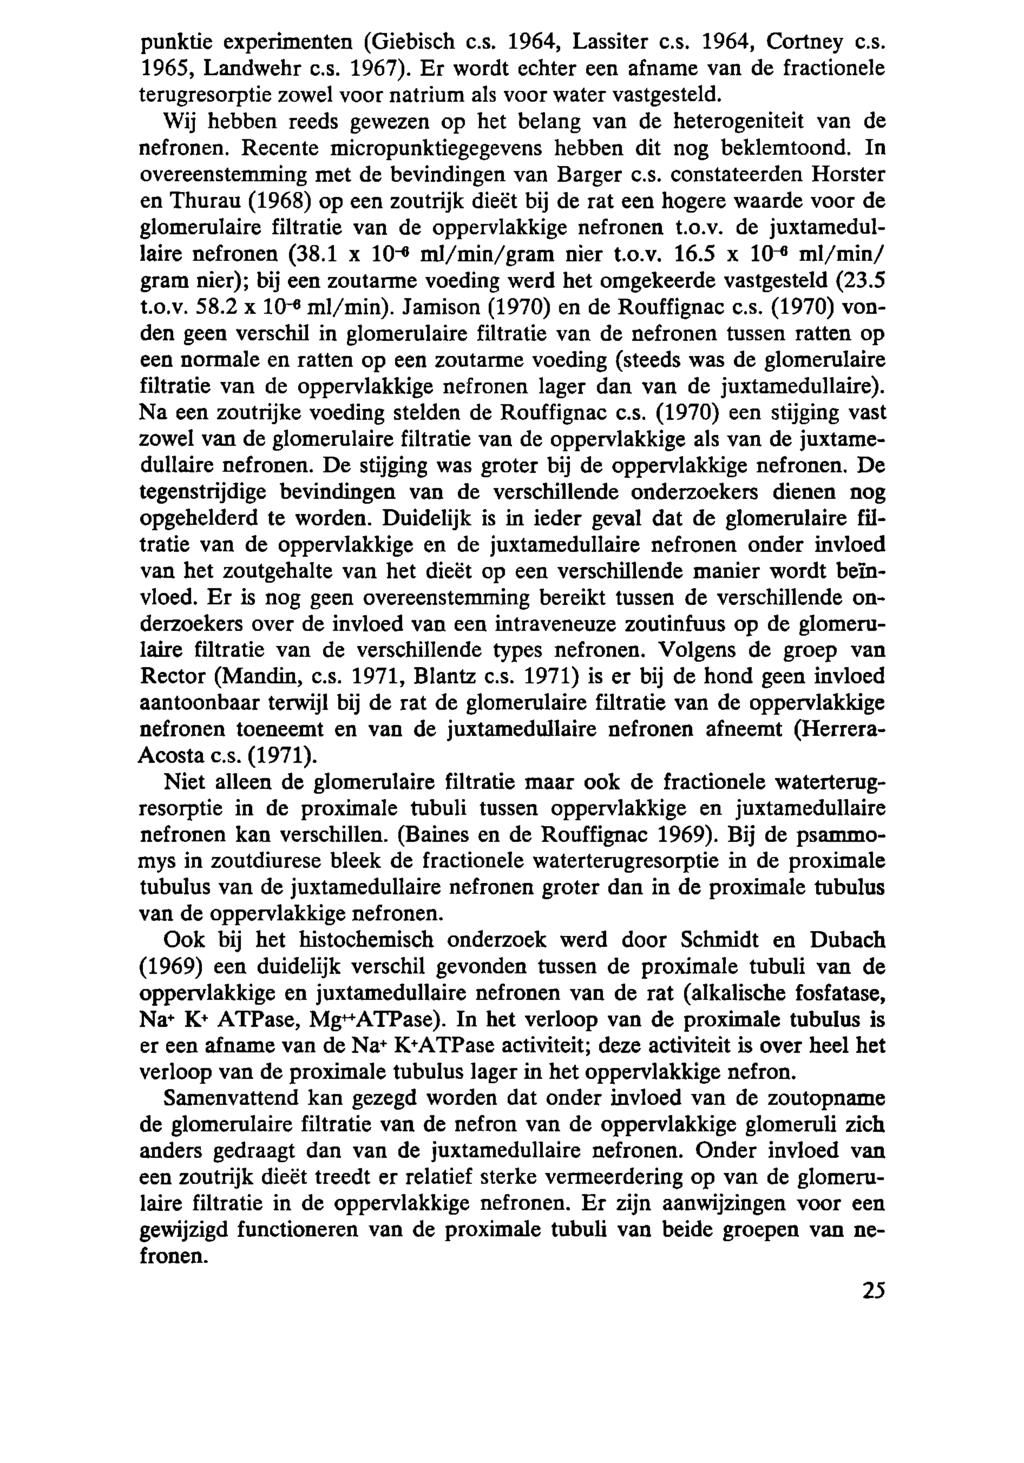 punktie experimenten (Giebisch c.s. 1964, Lassiter c.s. 1964, Cortney c.s. 1965, Landwehr c.s. 1967).